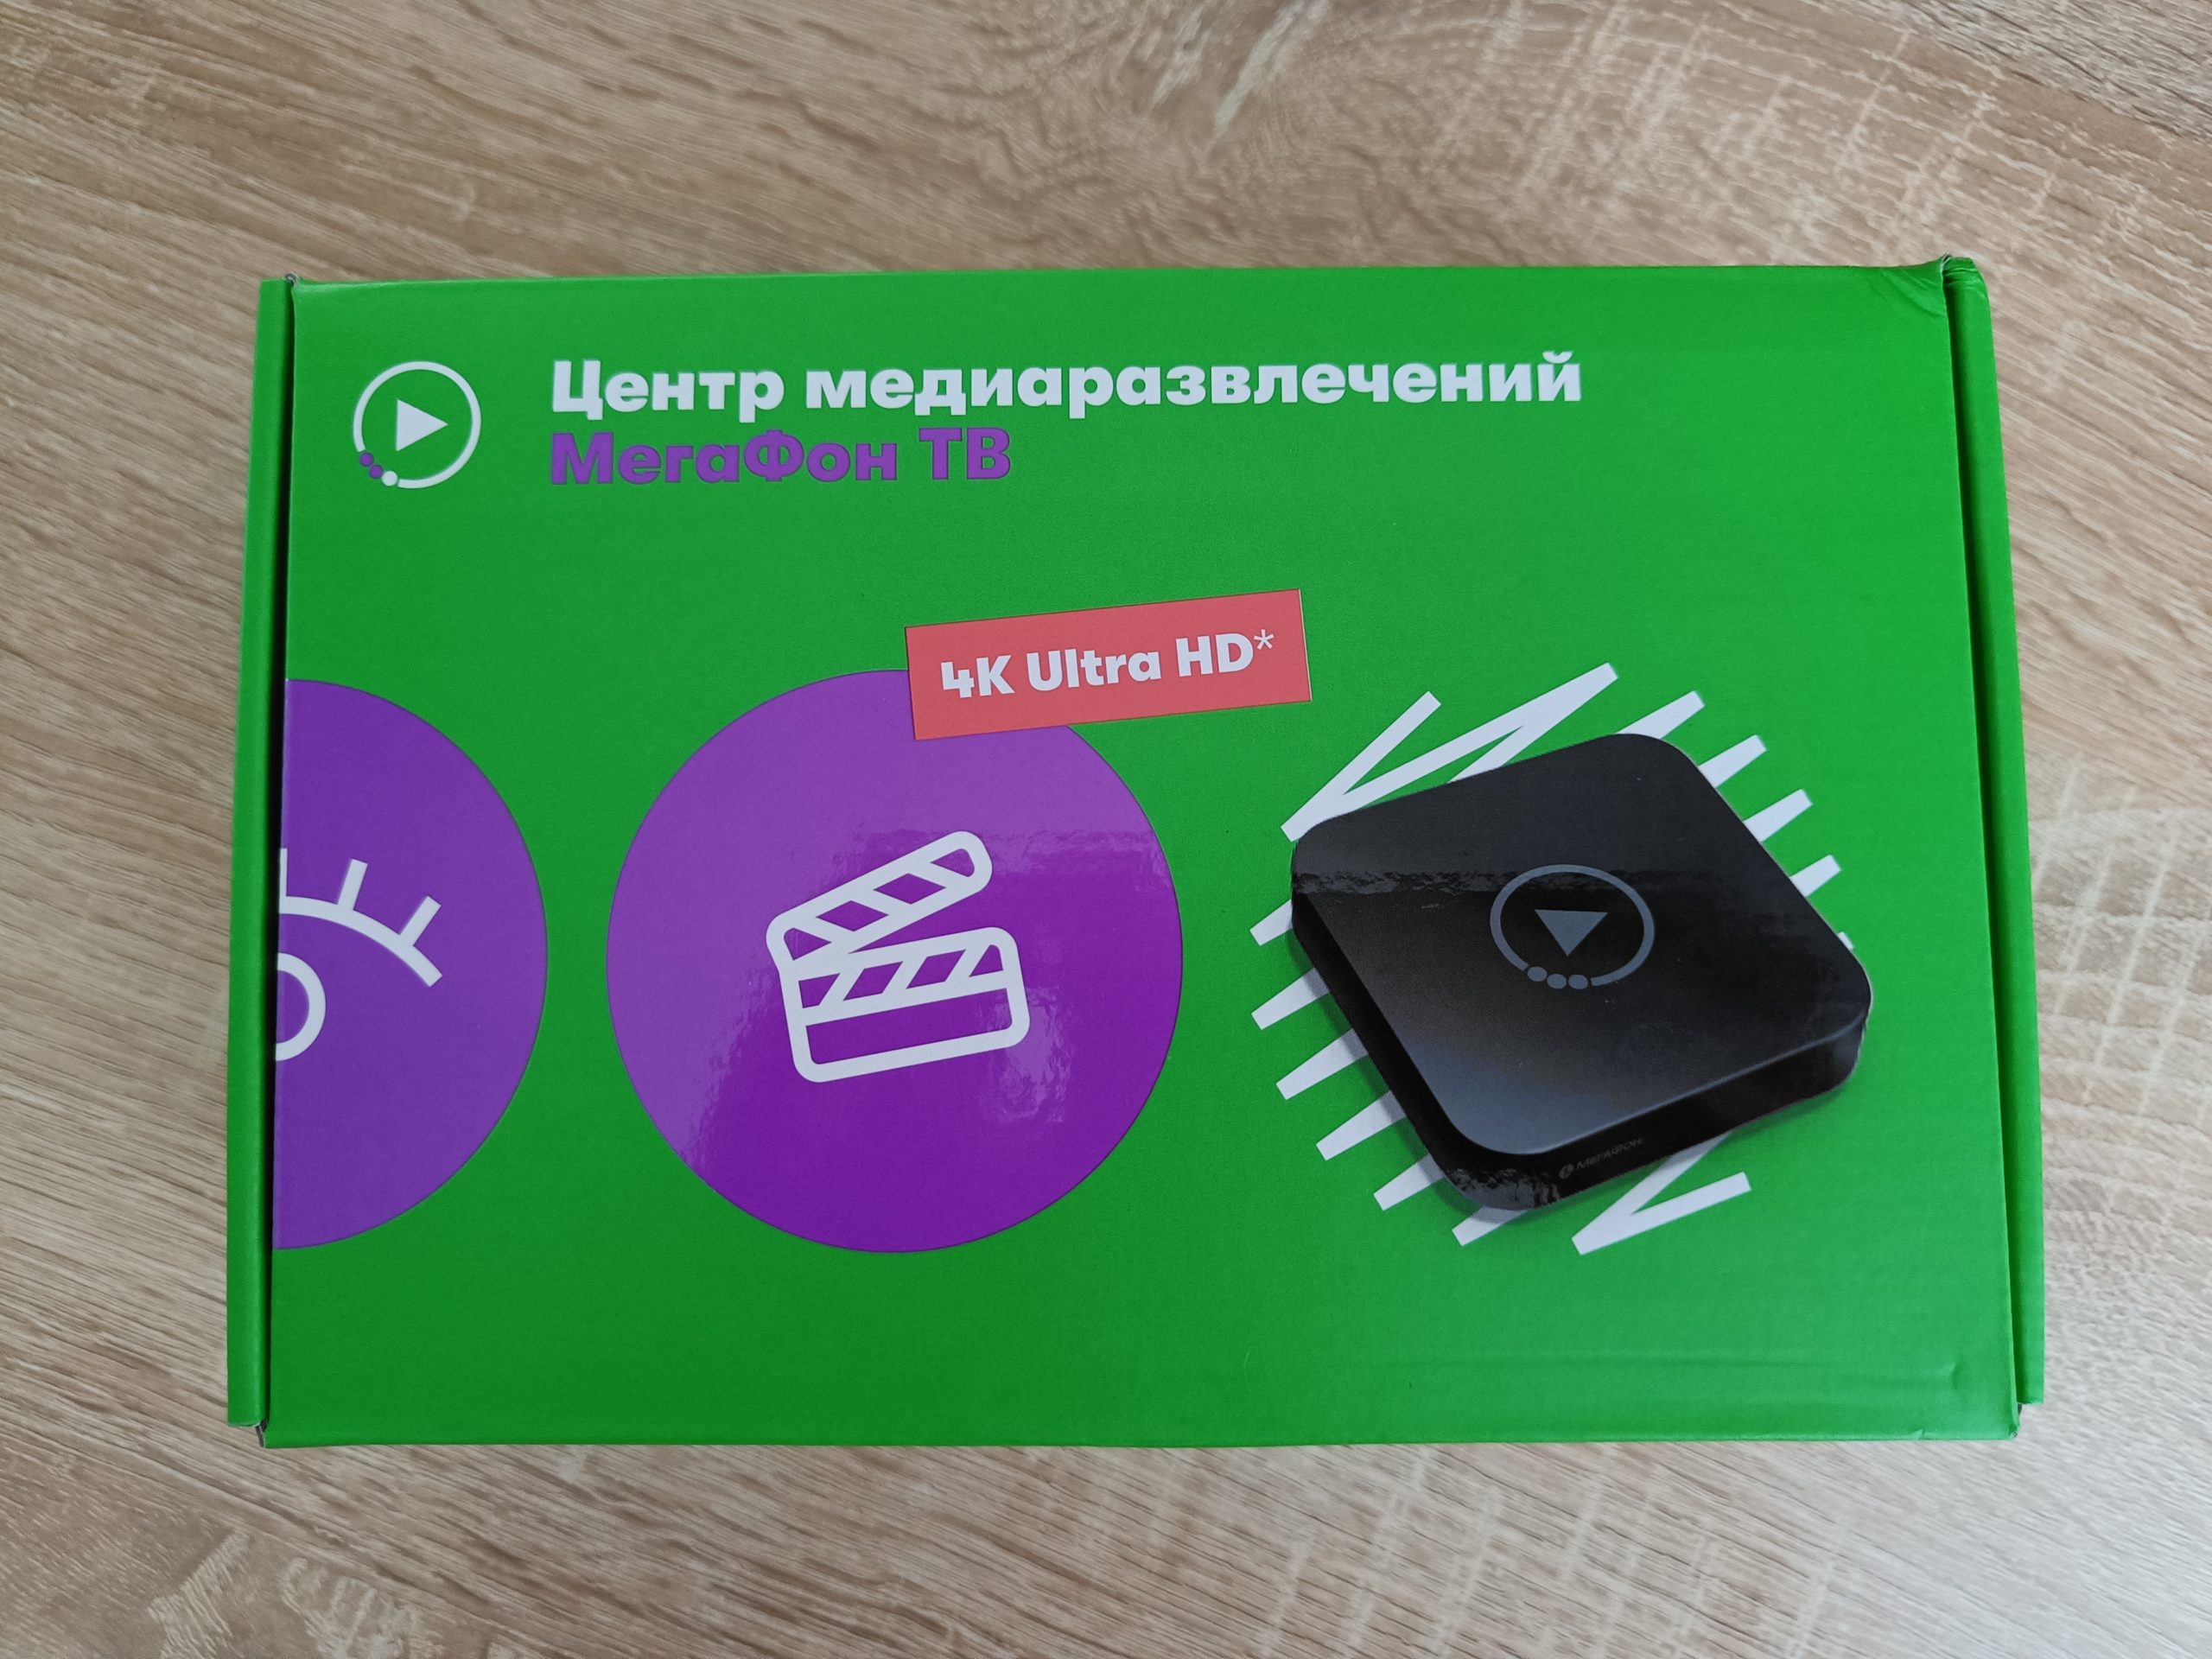 Домашний интернет от МегаФон в Мурманске (отзыв, на базе конвергентного тарифа) 3